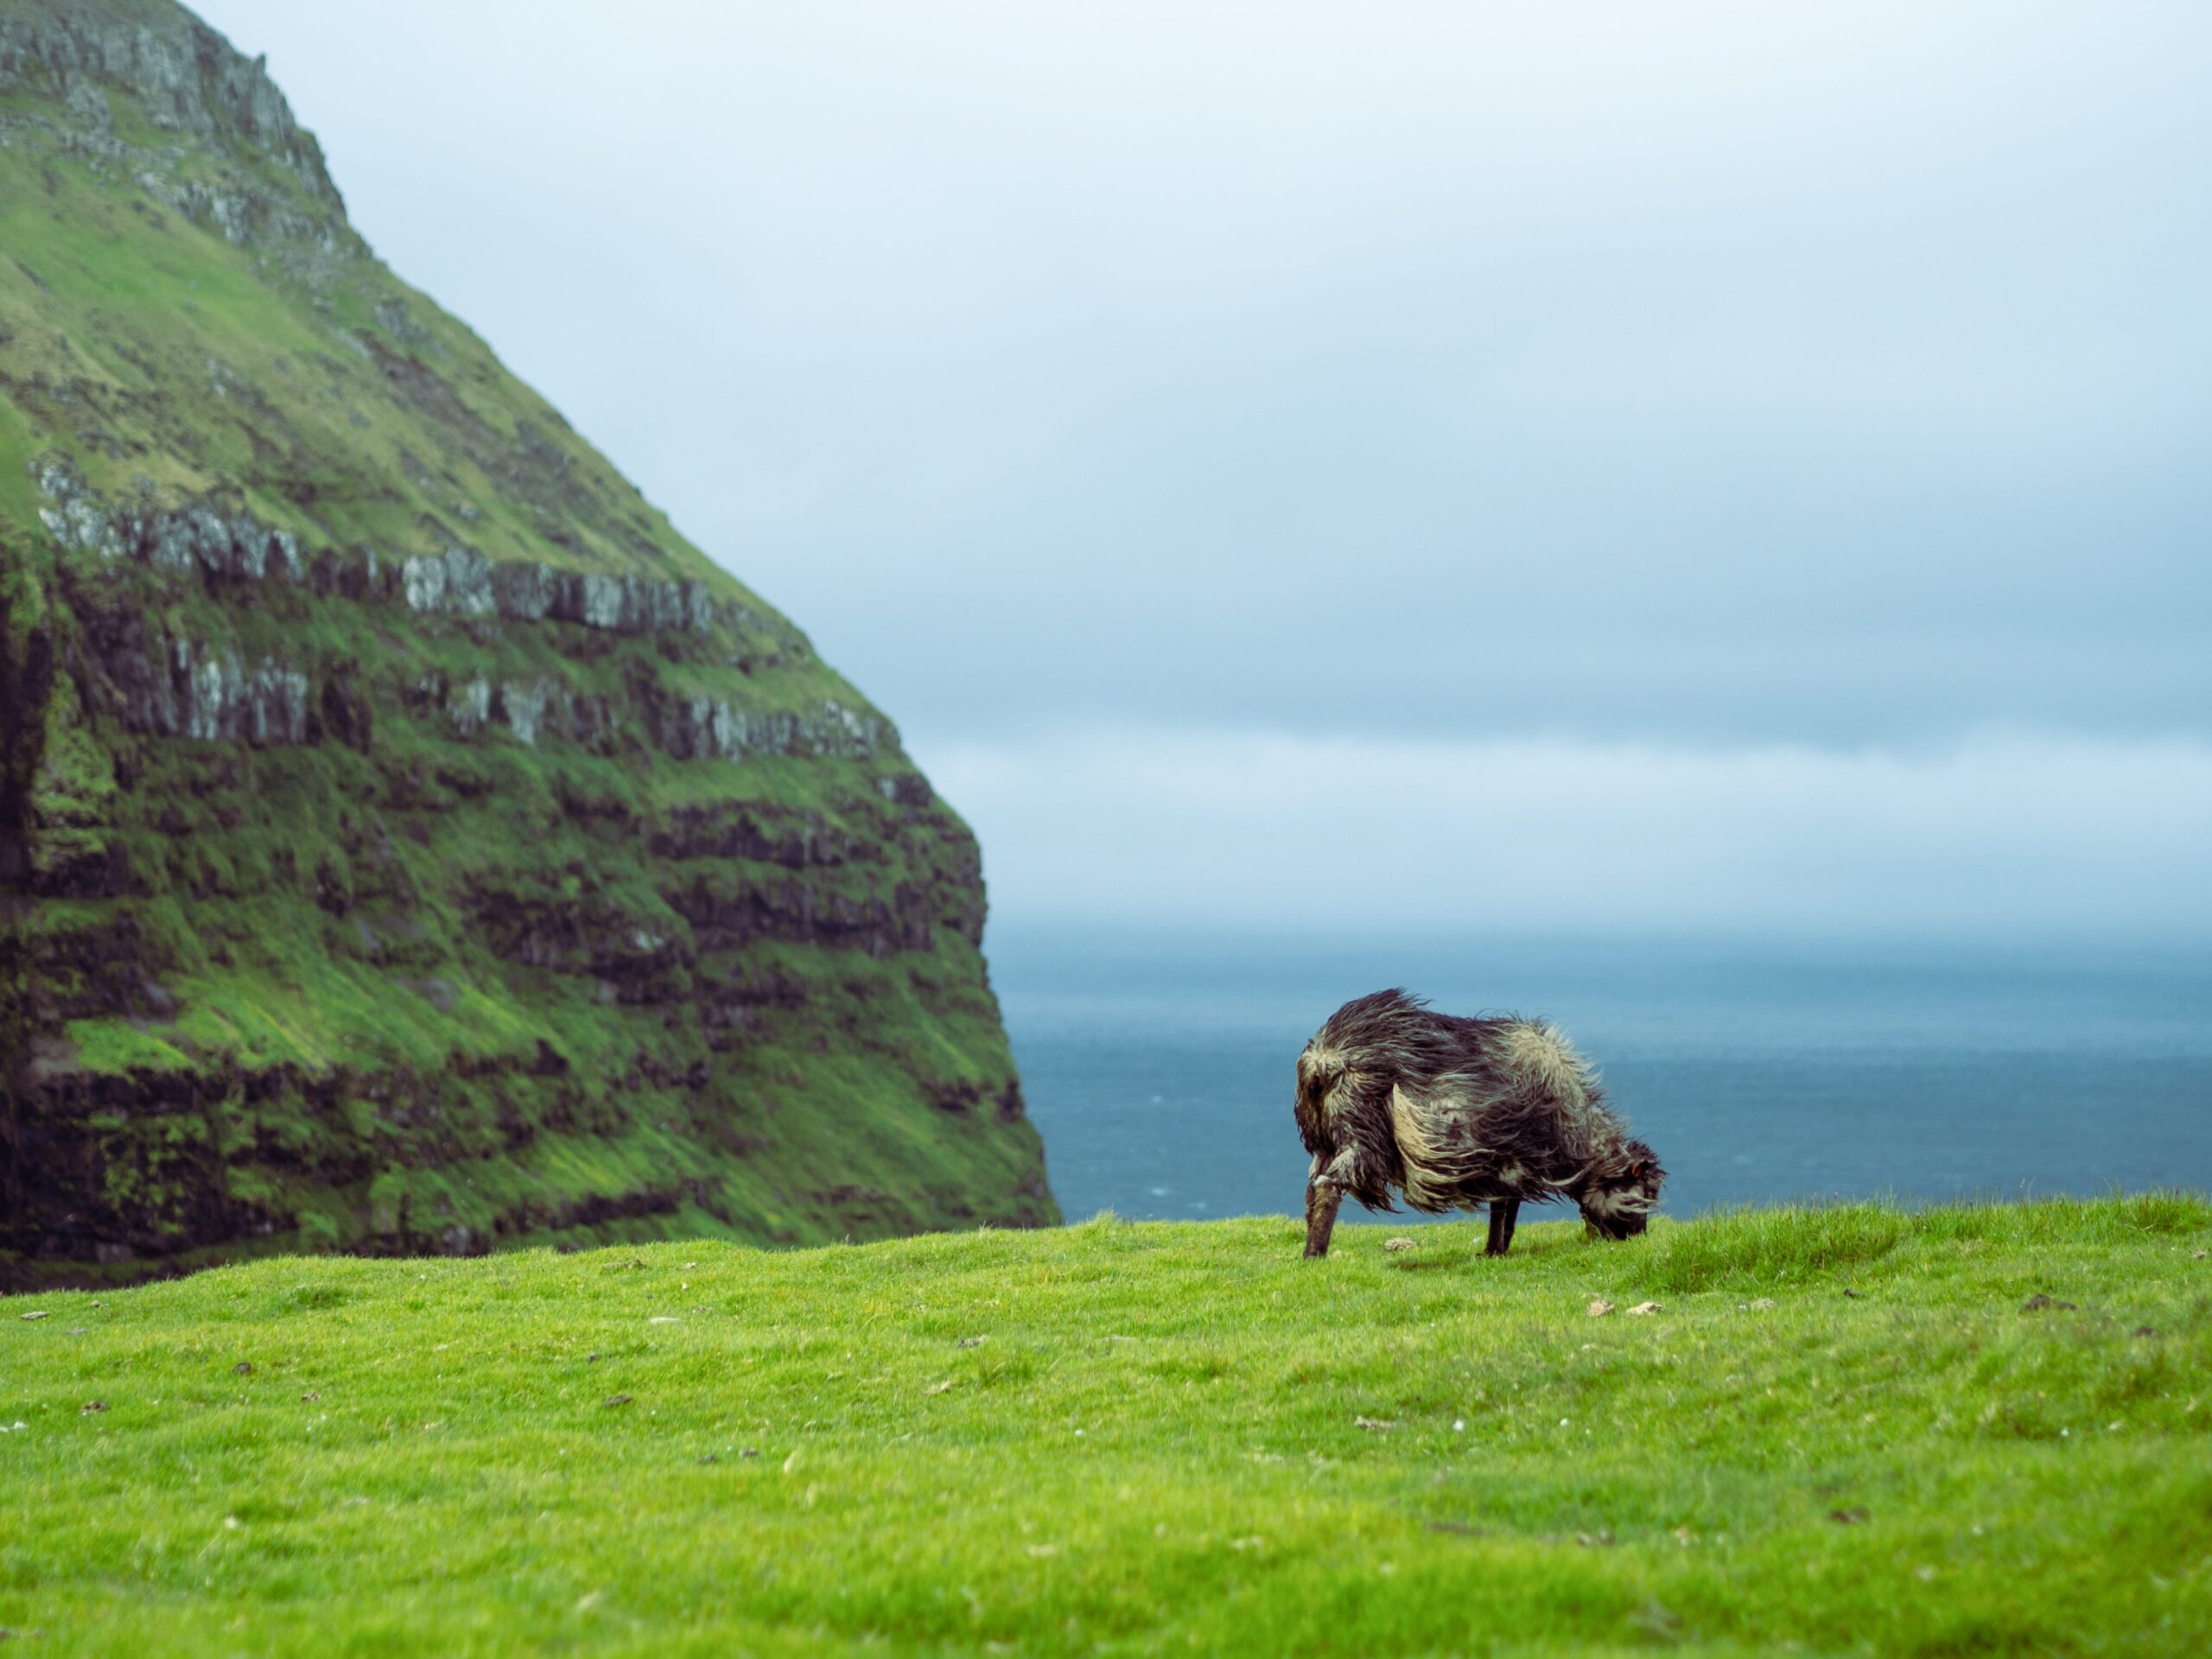 Sheep grazing in the wind, Faroe Islands